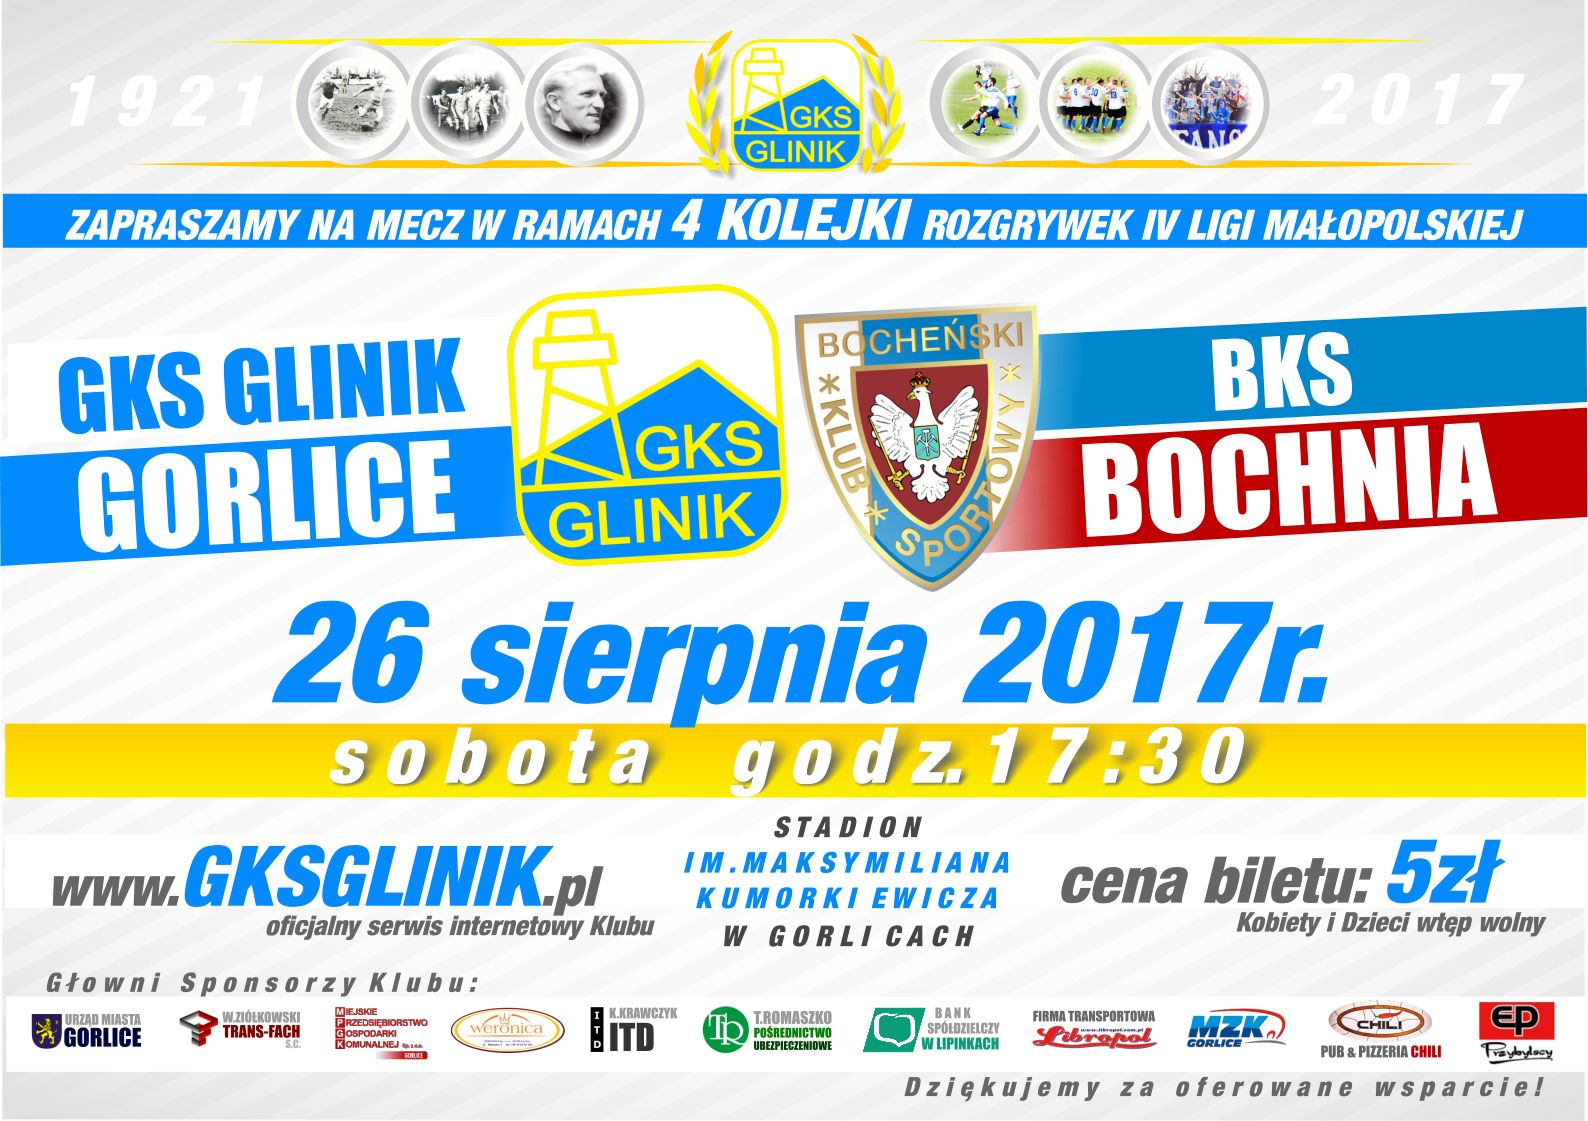 Mecz GKS Glinik Gorlice - BKS Bochnia